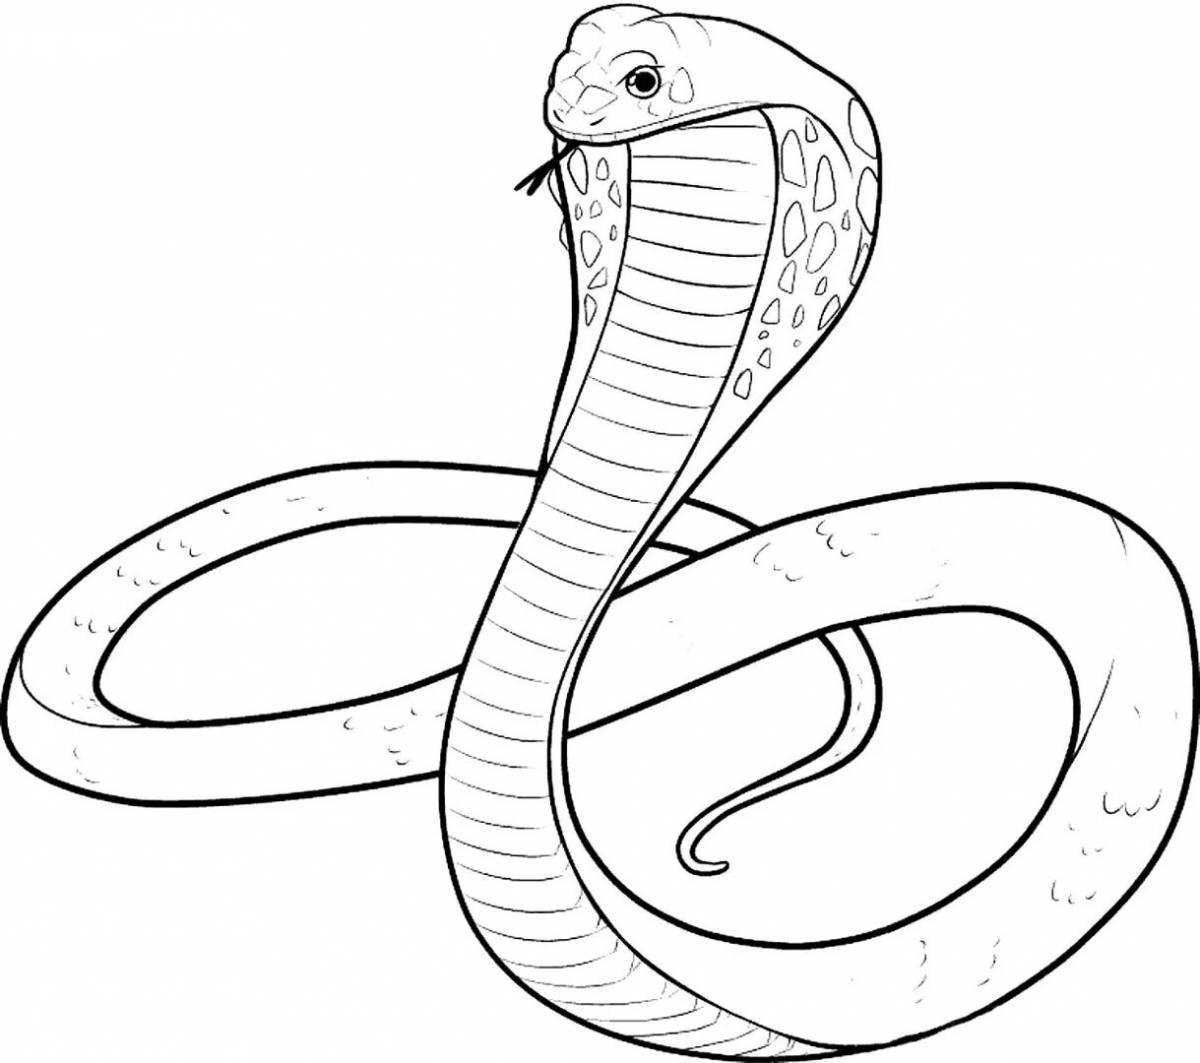 Самая ядовитая змея в мире: тайпан